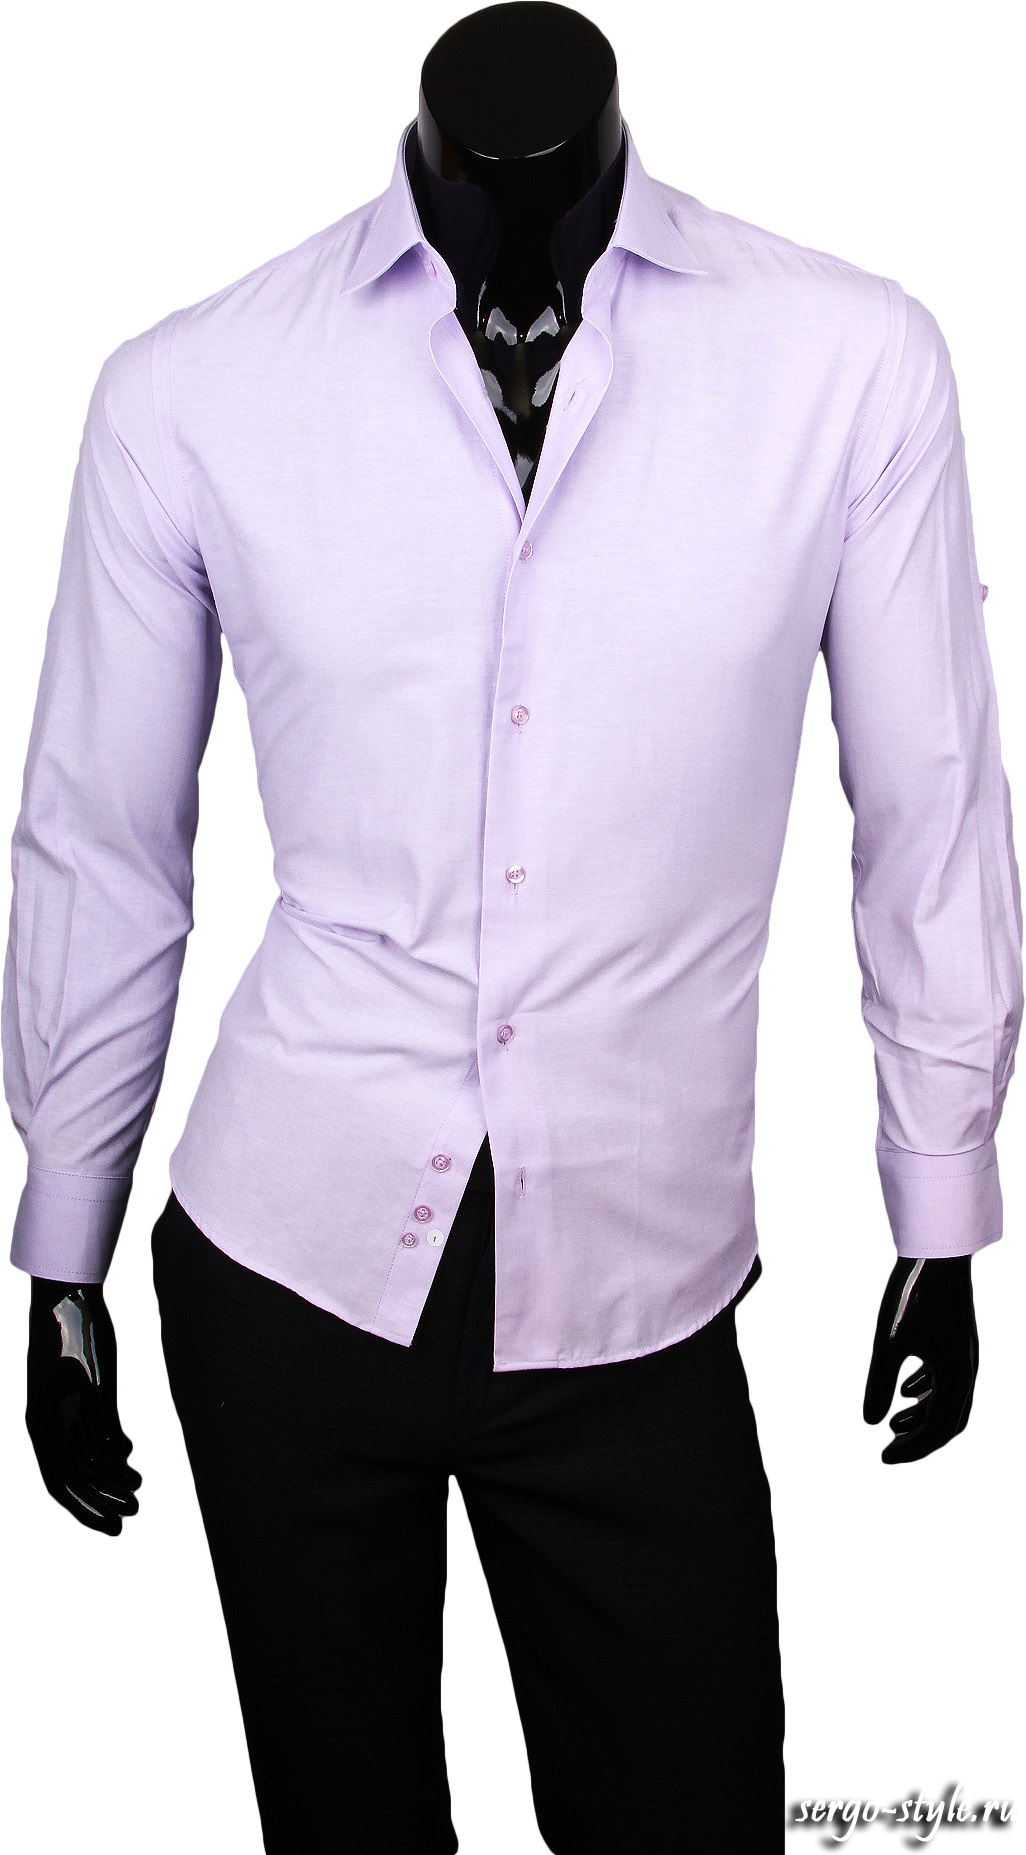 Мужская рубашка Paolo Bertolucci приталенная цвет лавандовый однотонный купить в Москве недорого